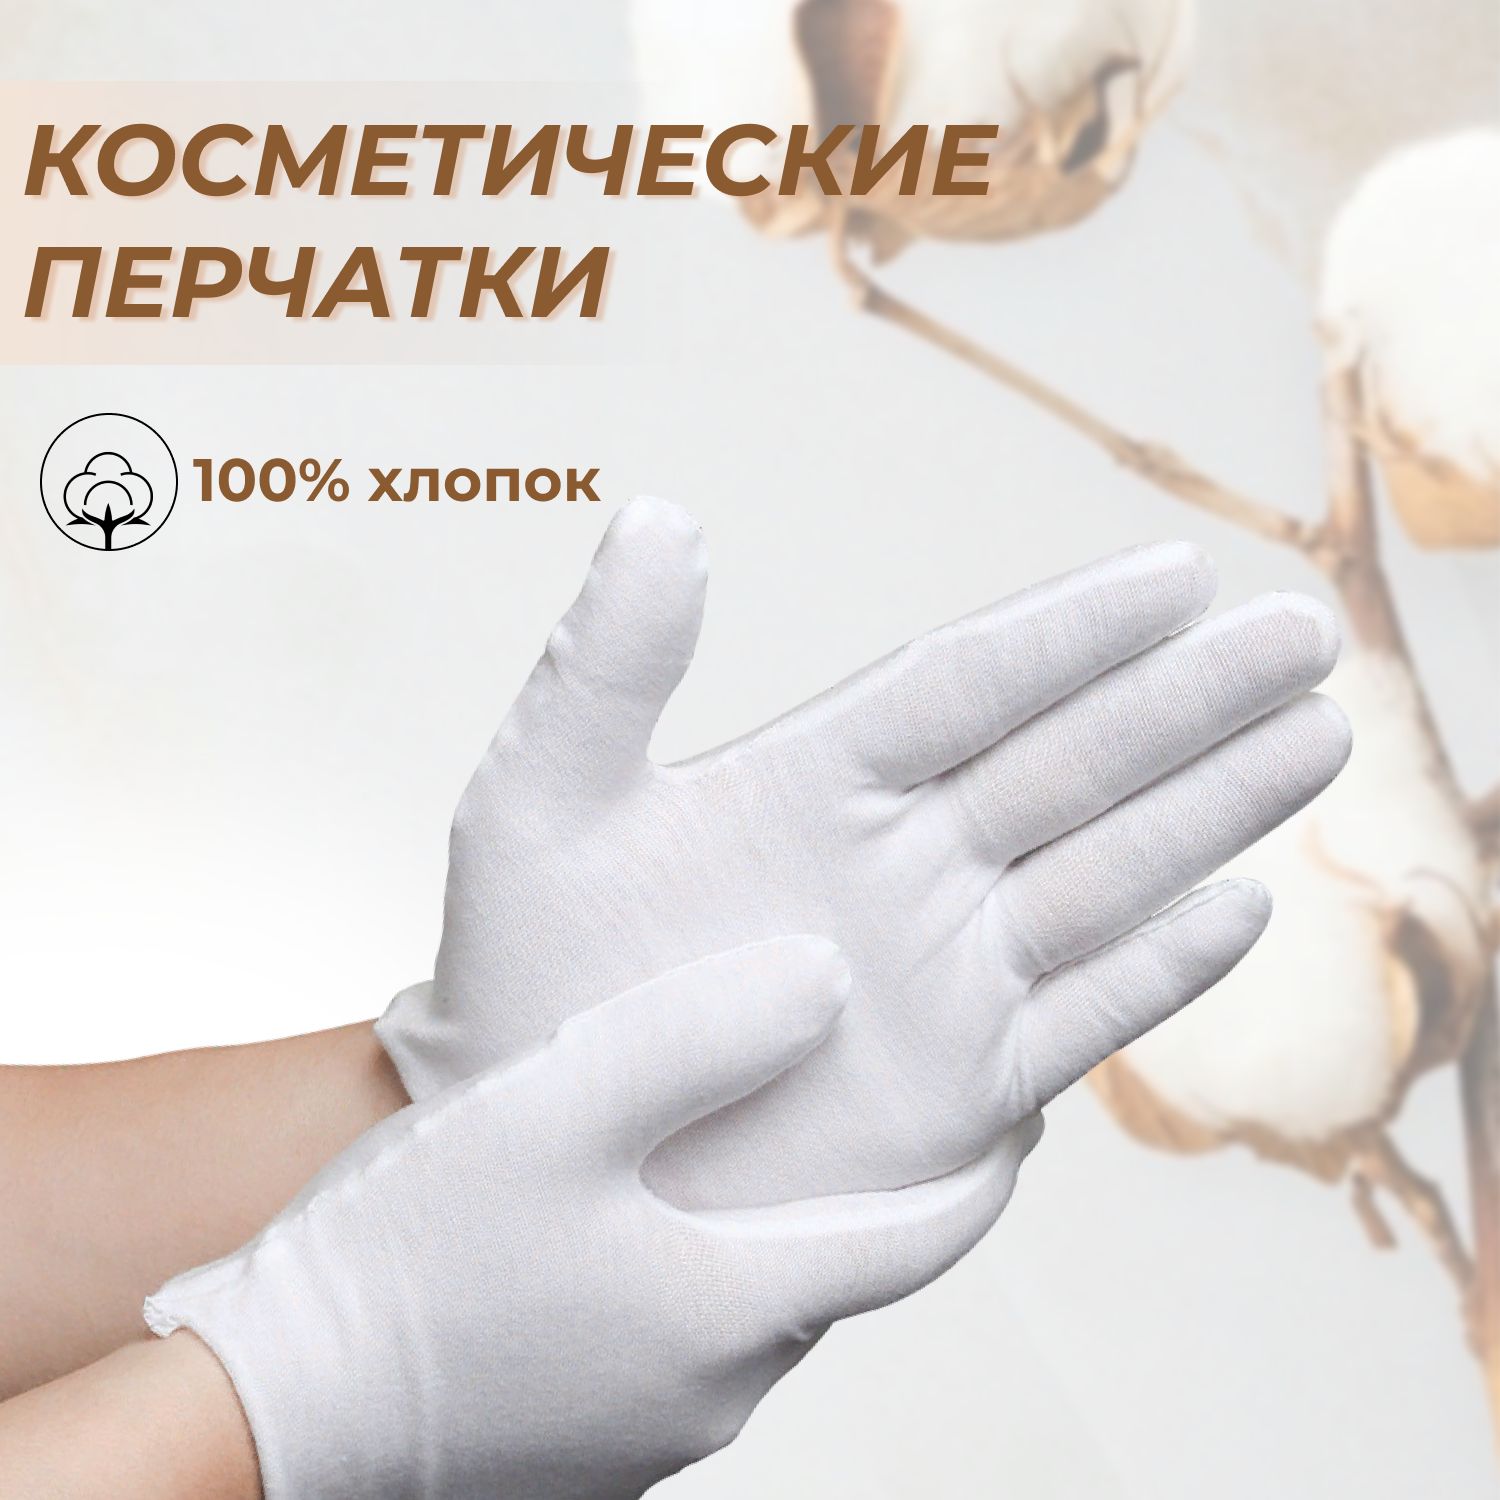 Купить перчатки косметические для ухода за руками в интернет магазине zenin-vladimir.ru